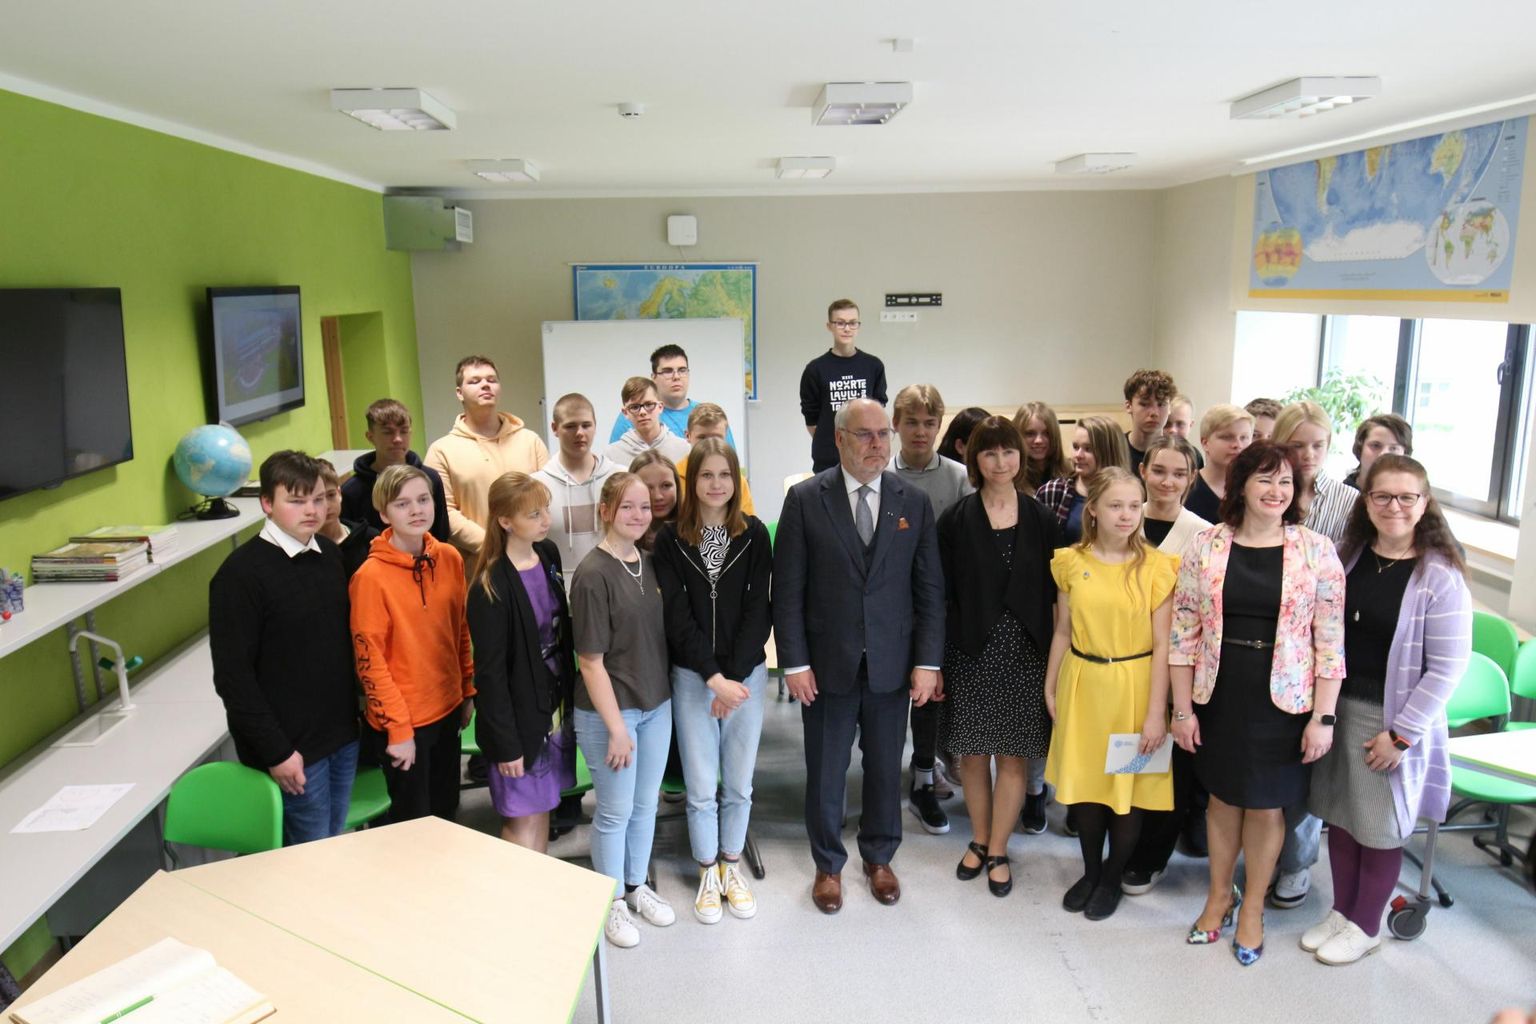 Kevadel külastas Väätsa kooli president Alar Karis. Kooliga käib tutvumas omajagu külalisi, kuid presidendi visiit oli eriline.